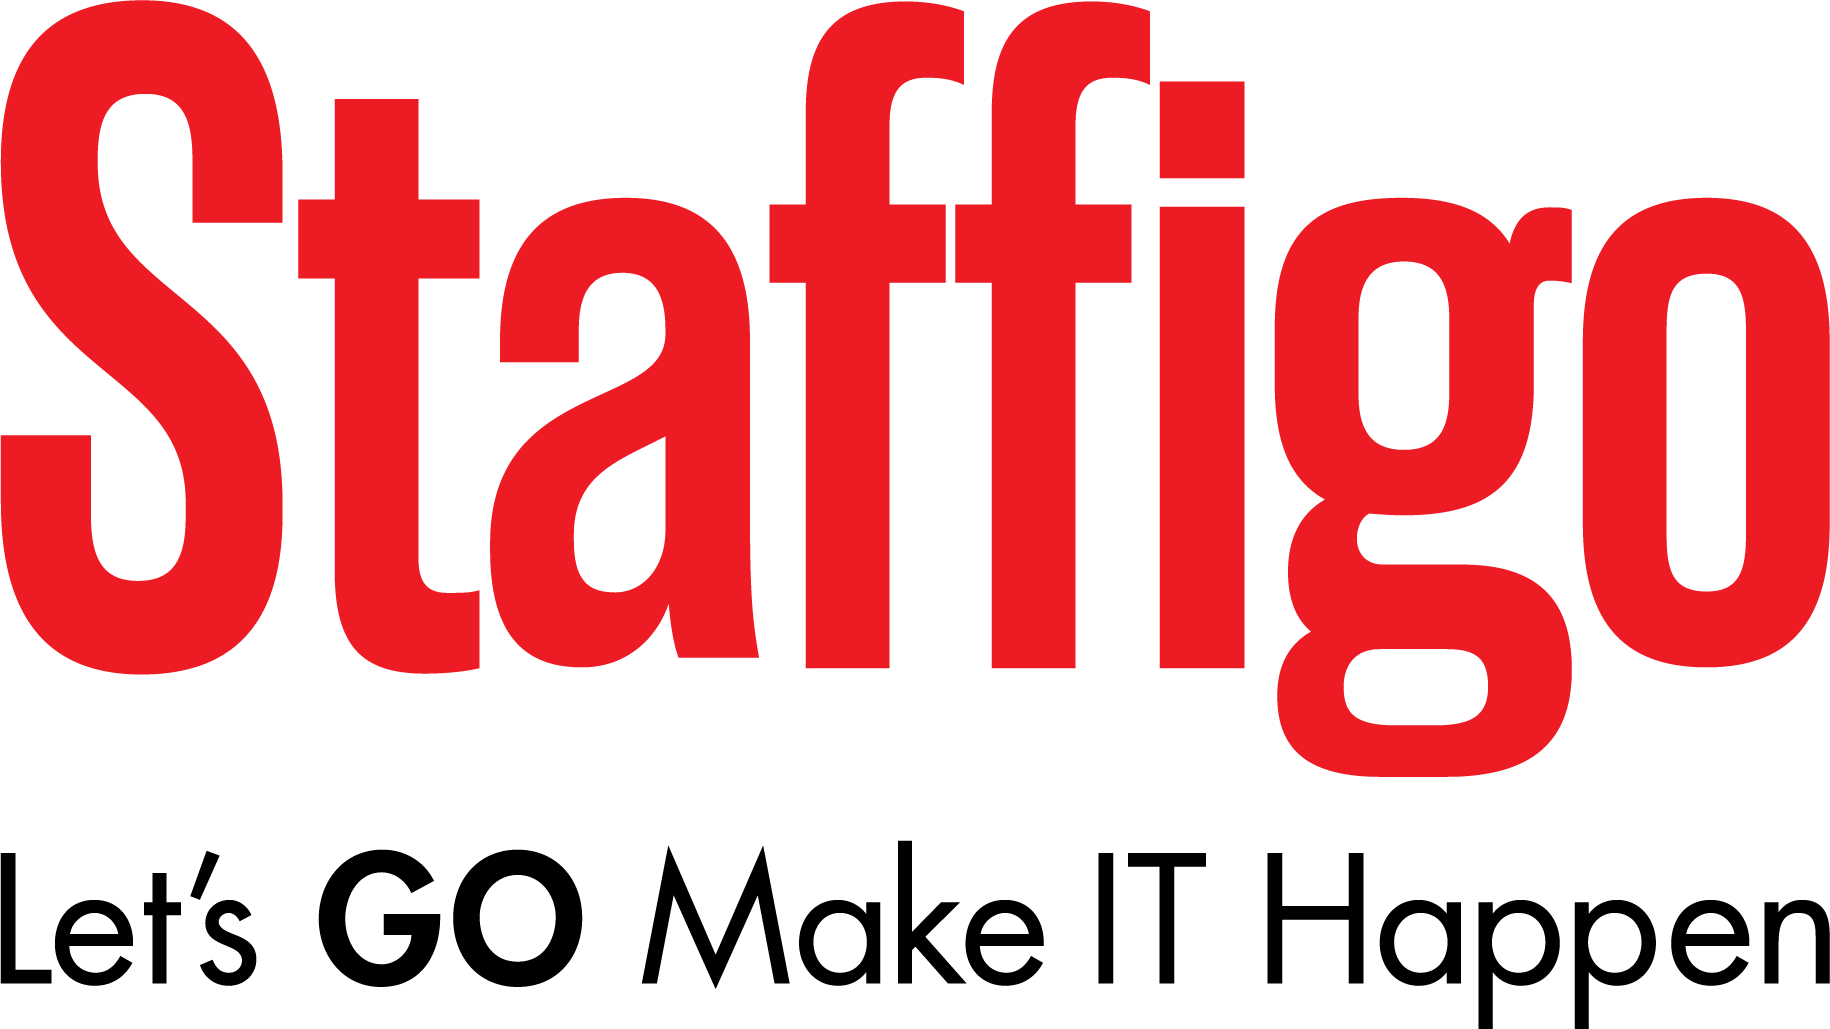 Staffigo Technical Services Chicago, USA